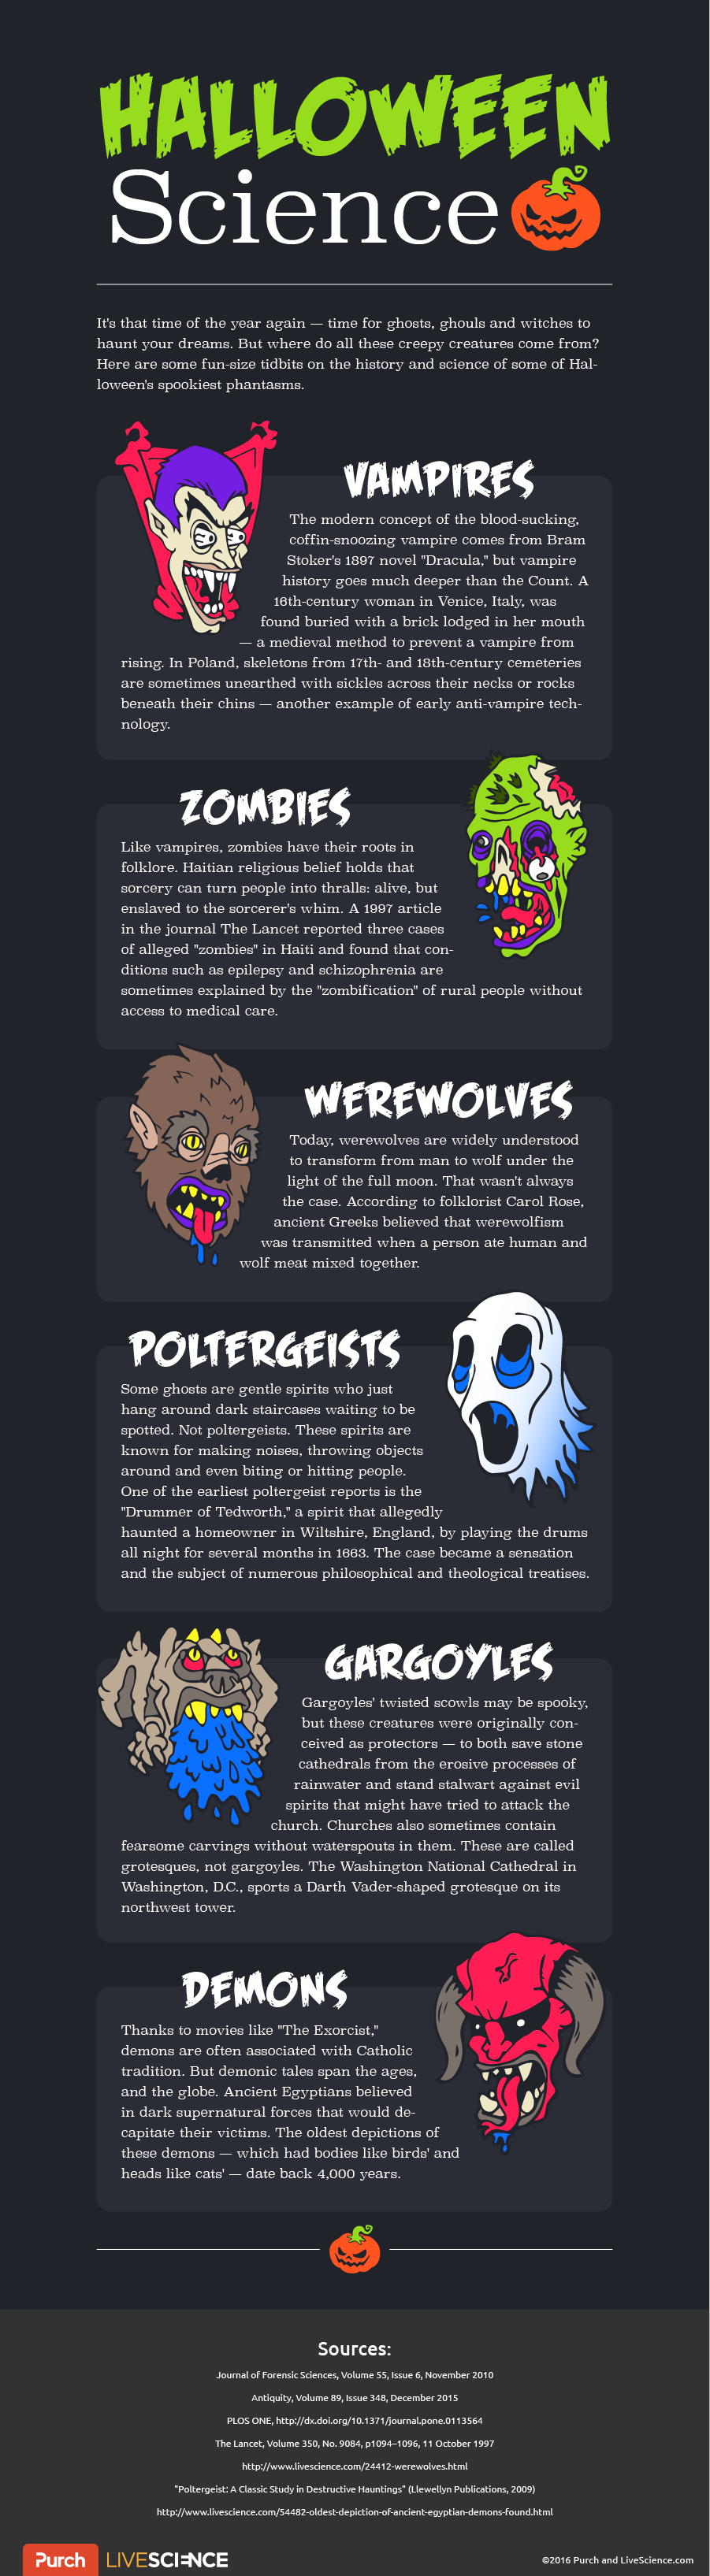 Origin Stories of the Scariest Halloween Monsters Like Werewolves, Vampires